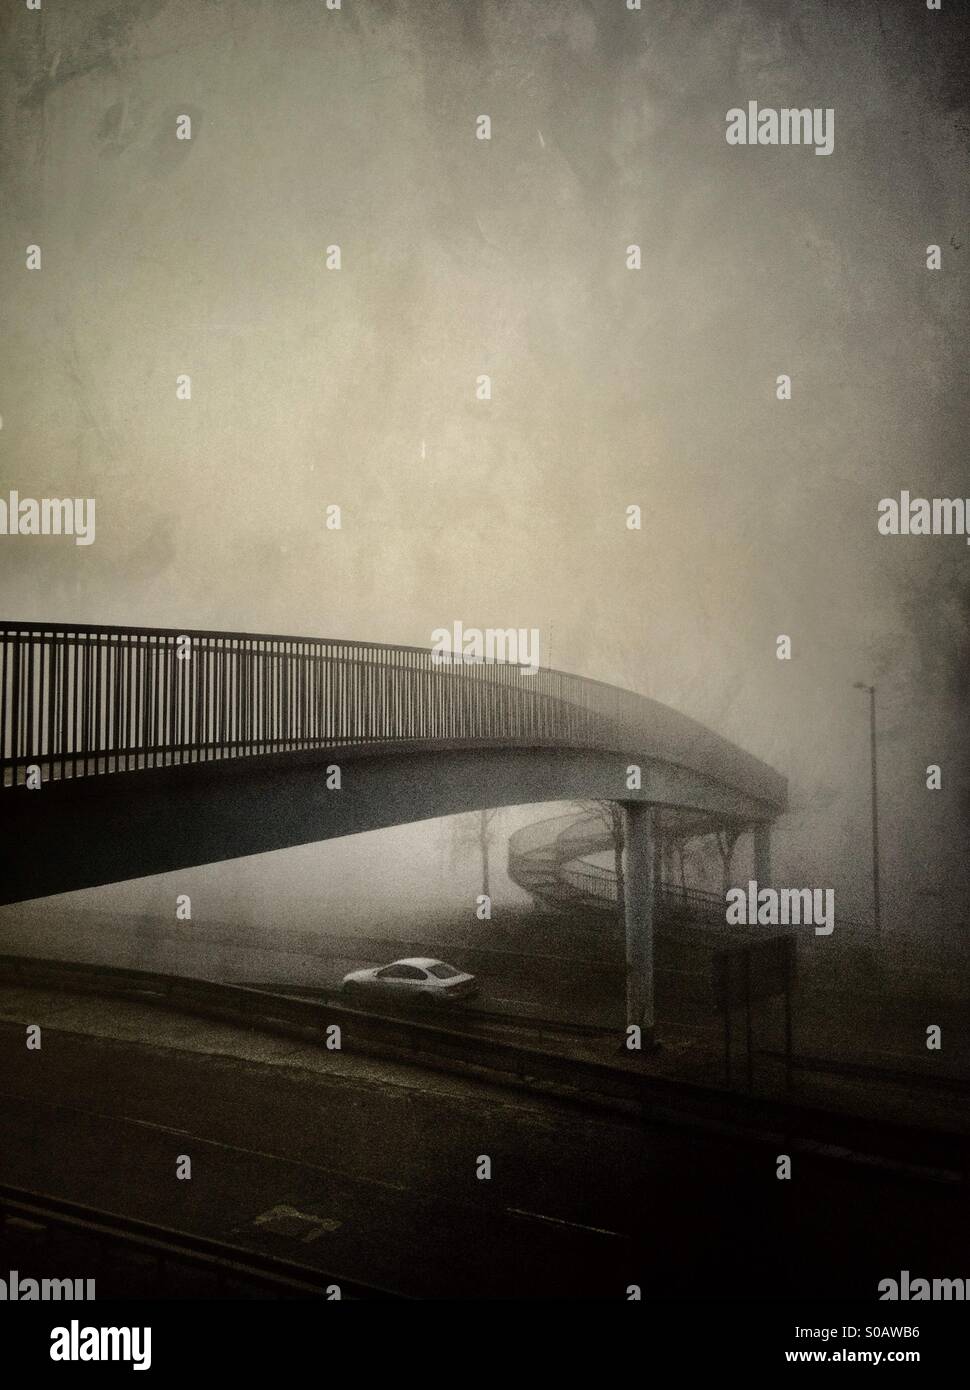 Car under bridge in fog. Stock Photo